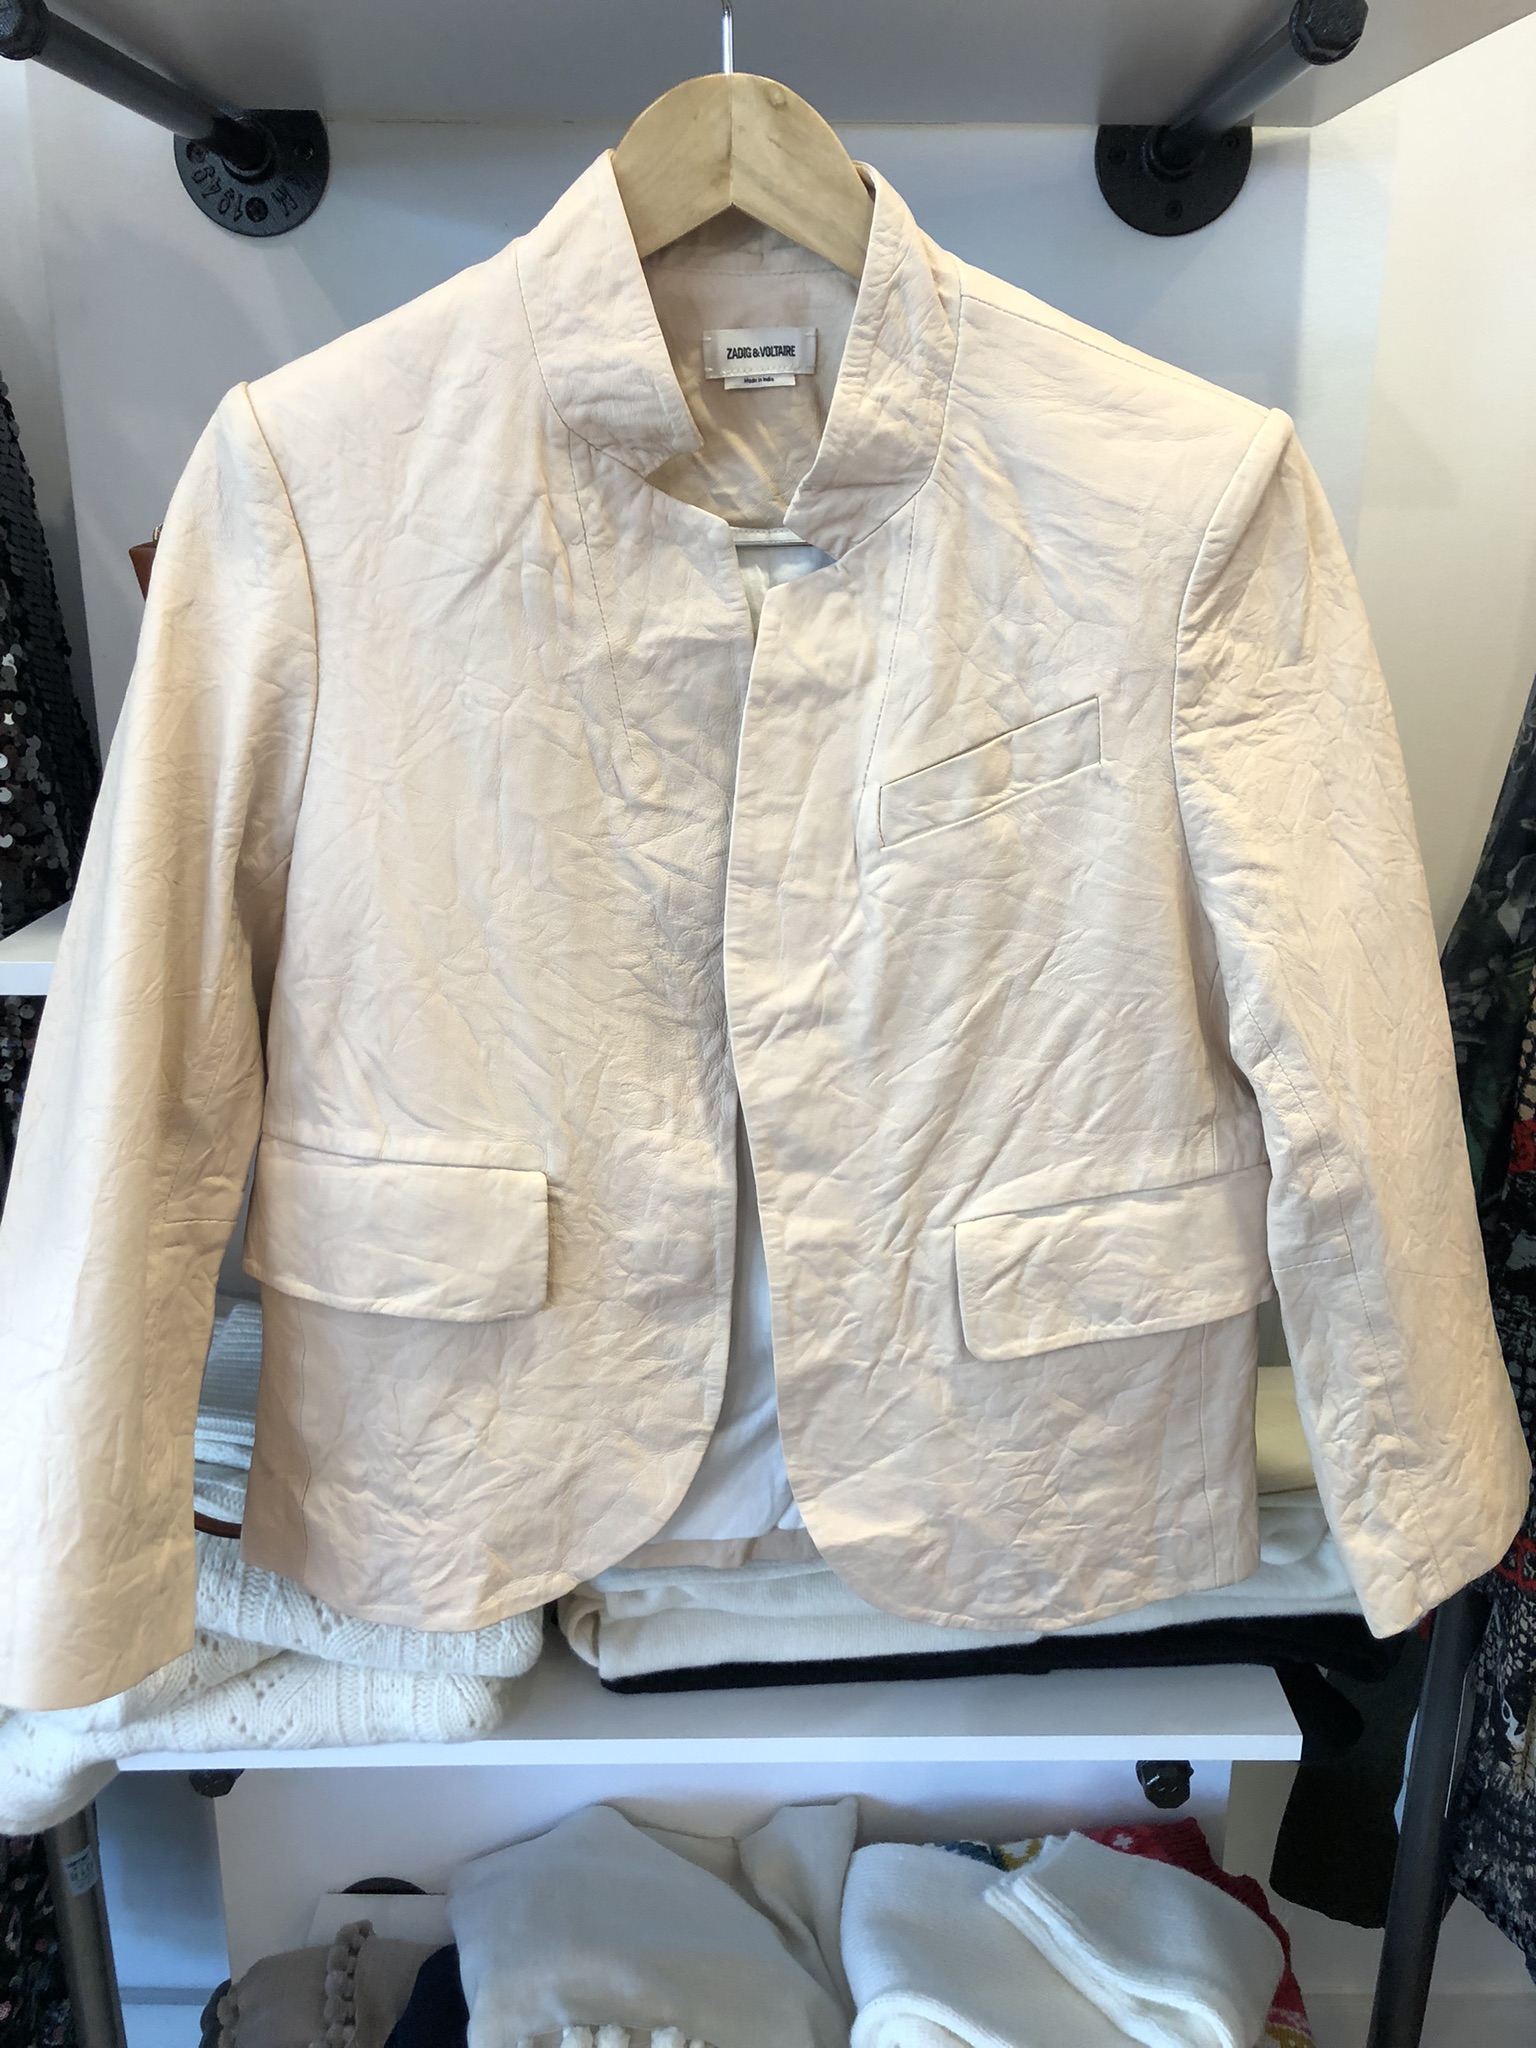 mashpee-shopping-cape-cod-white-jacket